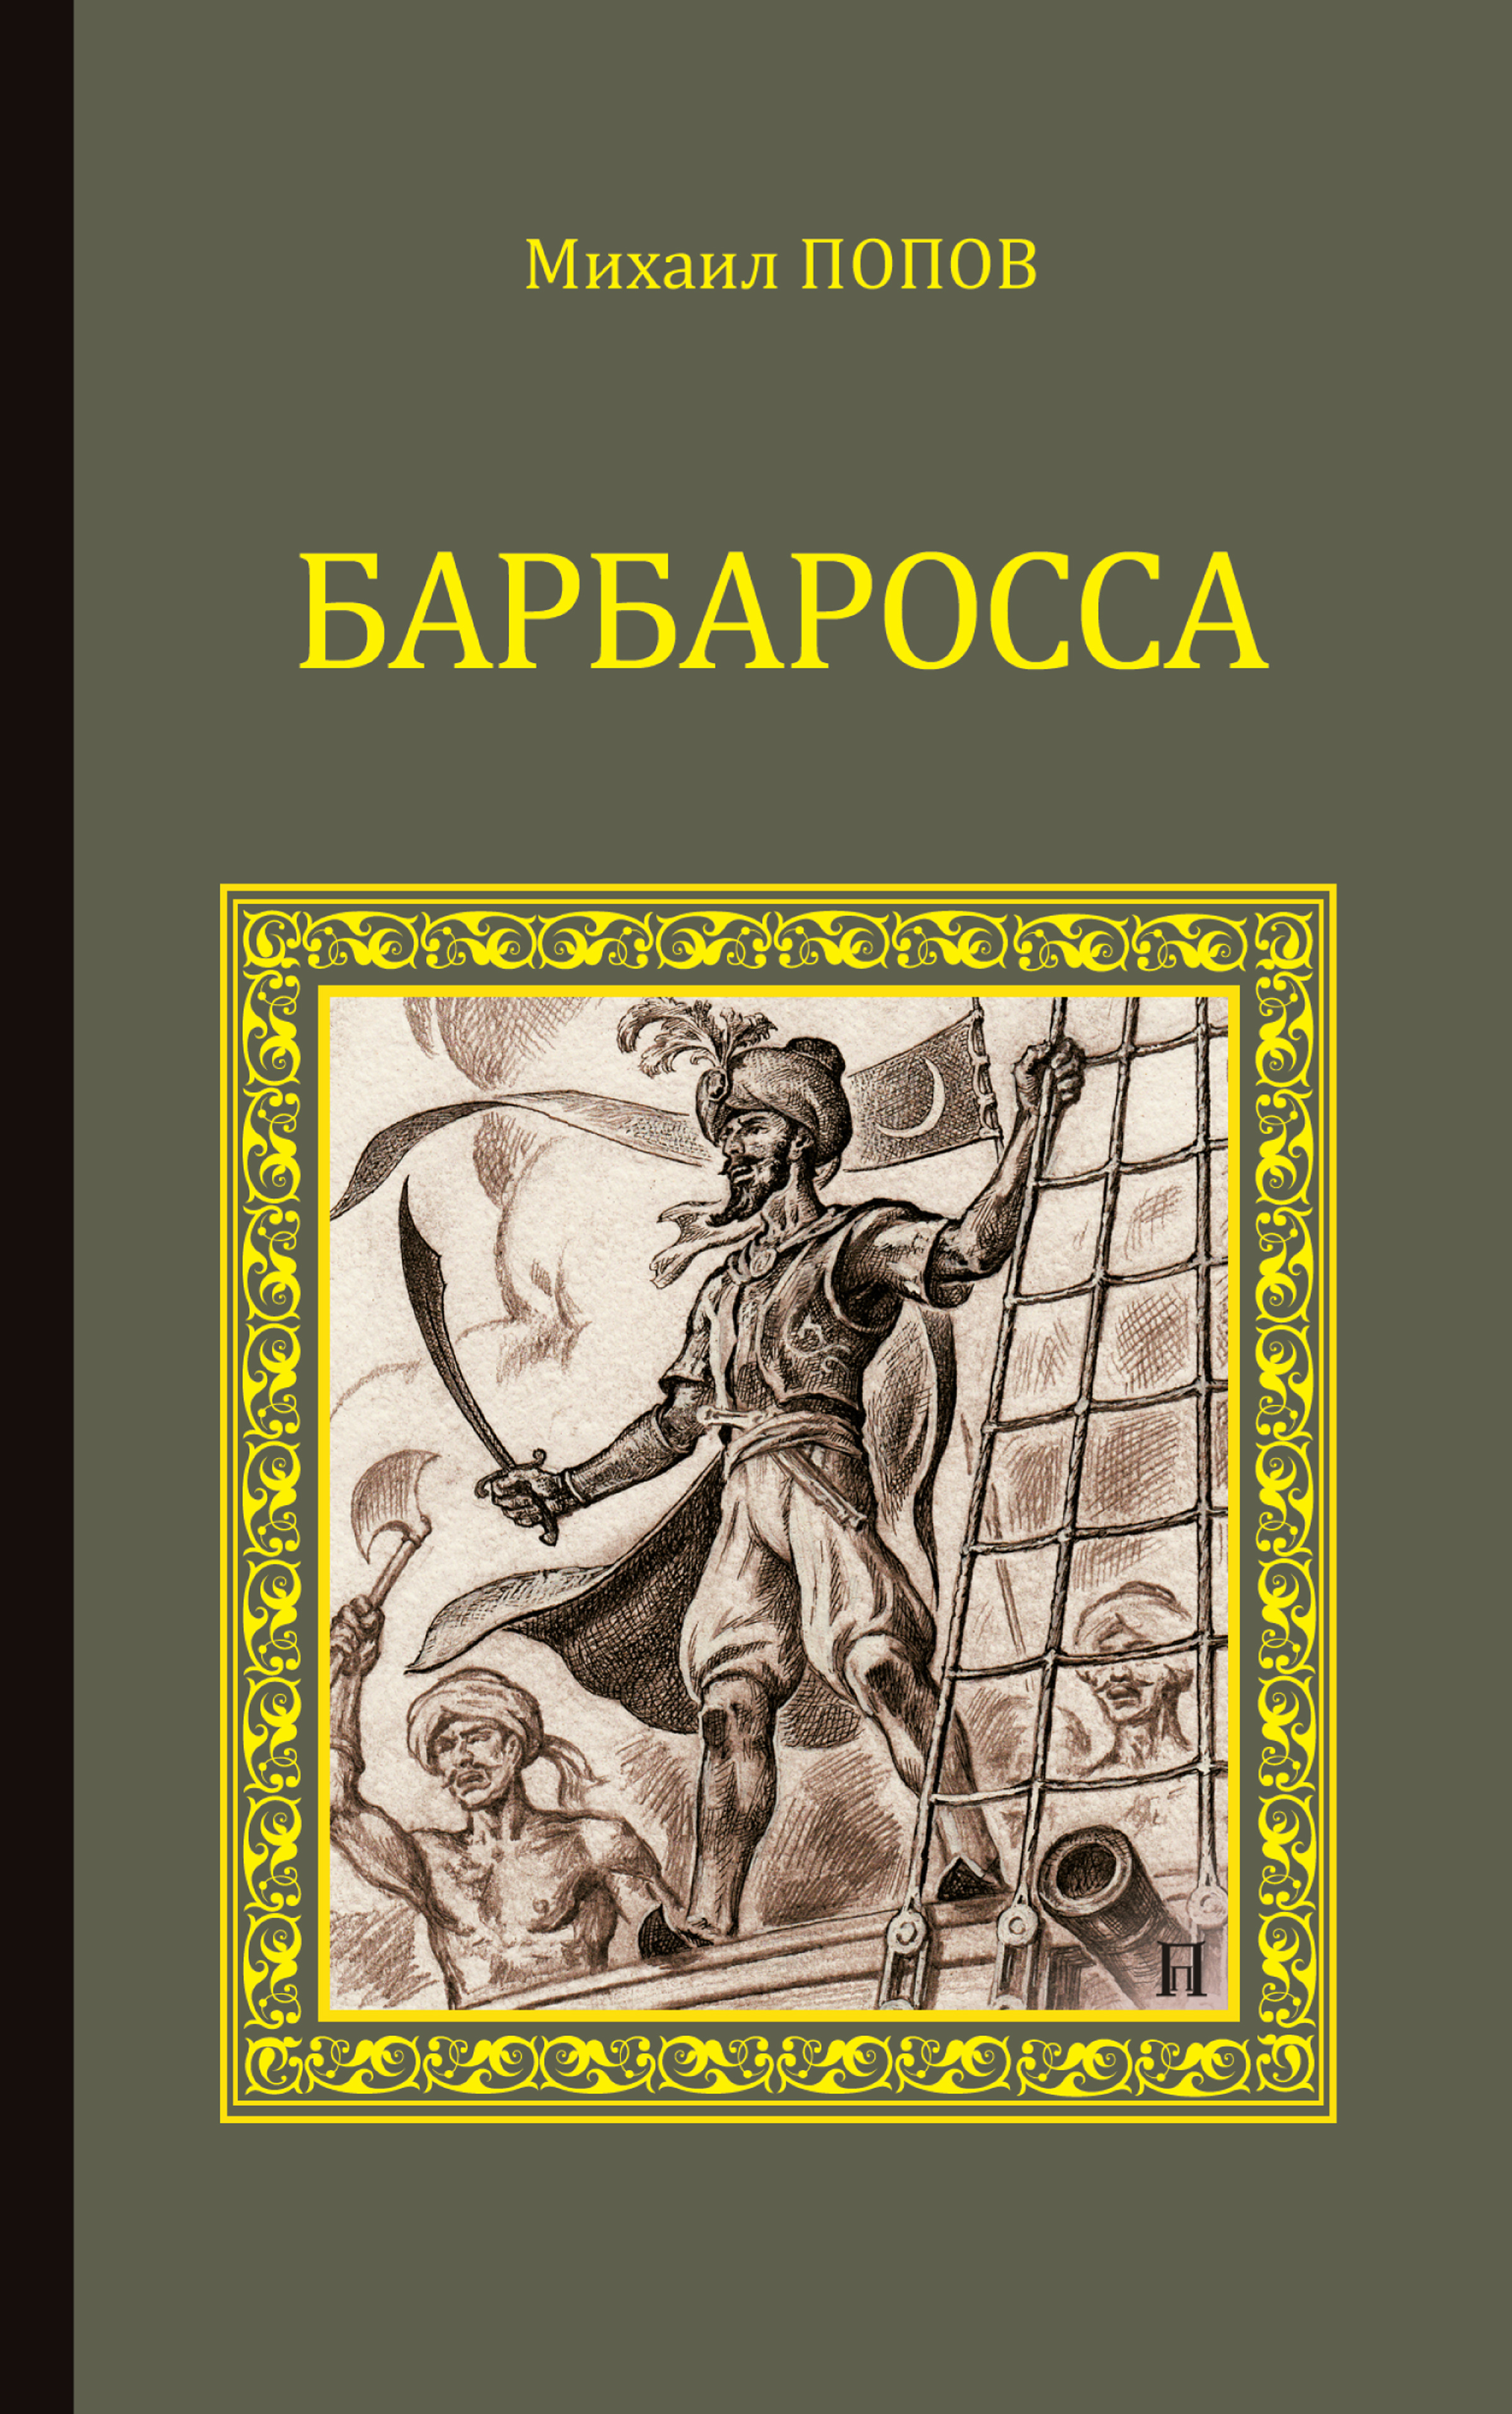 Книга Барбаросса из серии , созданная Михаил Попов, написана в жанре Исторические приключения. Стоимость электронной книги Барбаросса с идентификатором 29604566 составляет 169.00 руб.